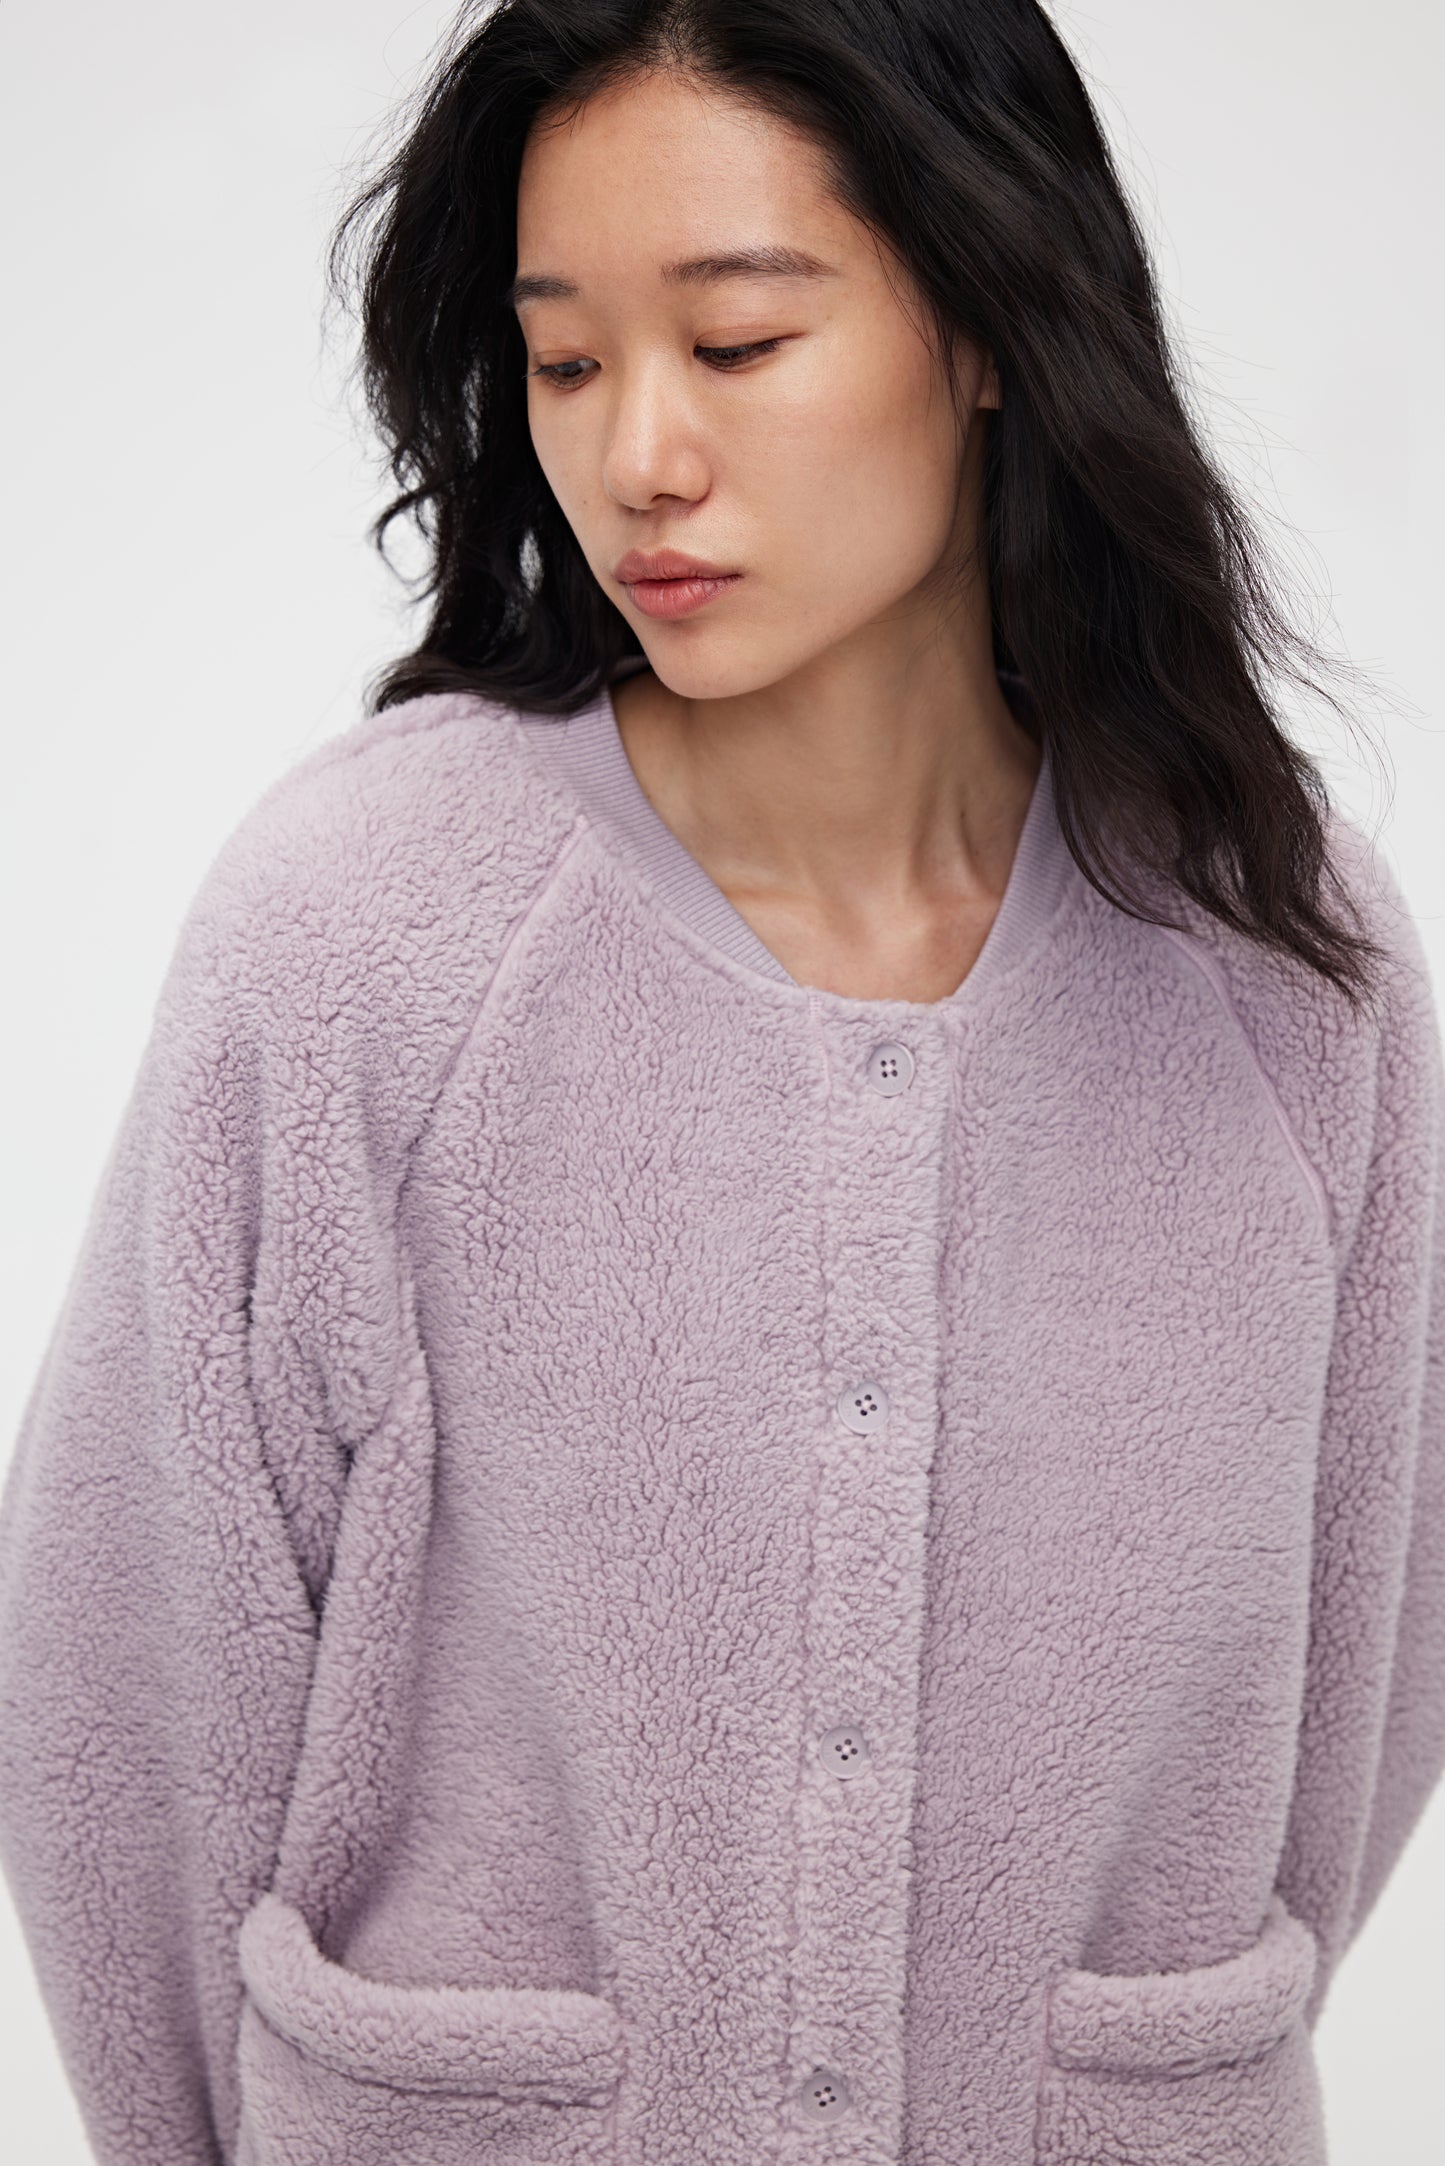 Front view of purple Fleece Pajama Top